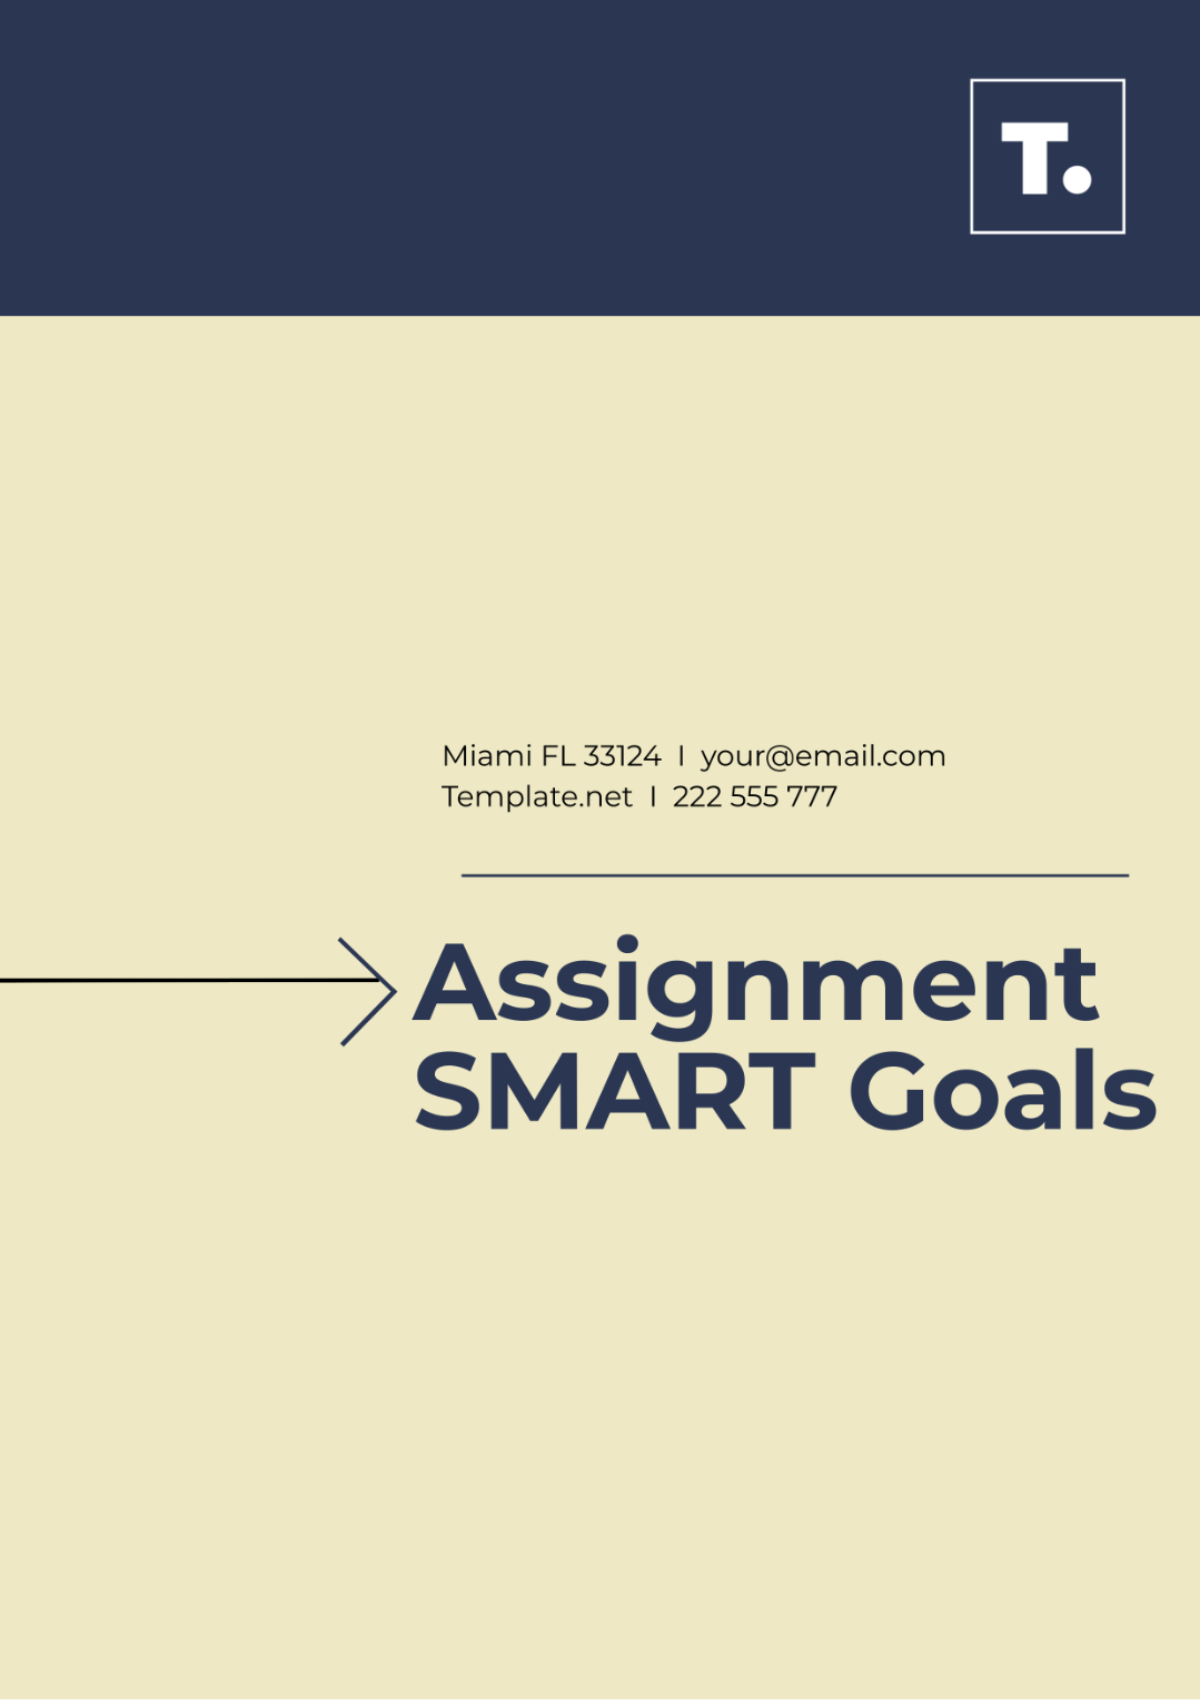 Free Assignment SMART Goals Template